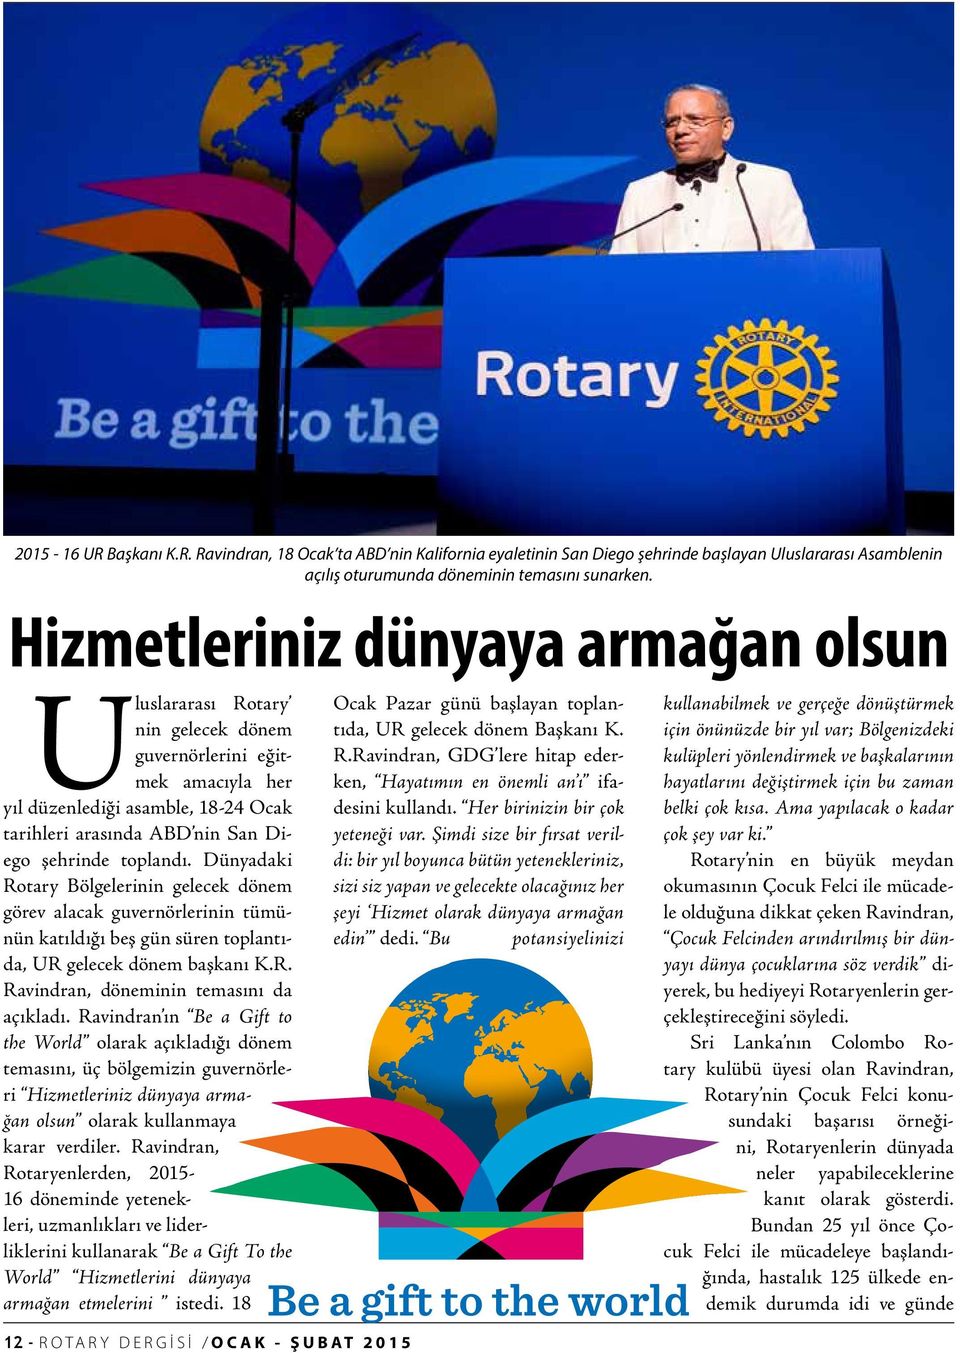 toplandı. Dünyadaki Rotary Bölgelerinin gelecek dönem görev alacak guvernörlerinin tümünün katıldığı beş gün süren toplantıda, UR gelecek dönem başkanı K.R. Ravindran, döneminin temasını da açıkladı.